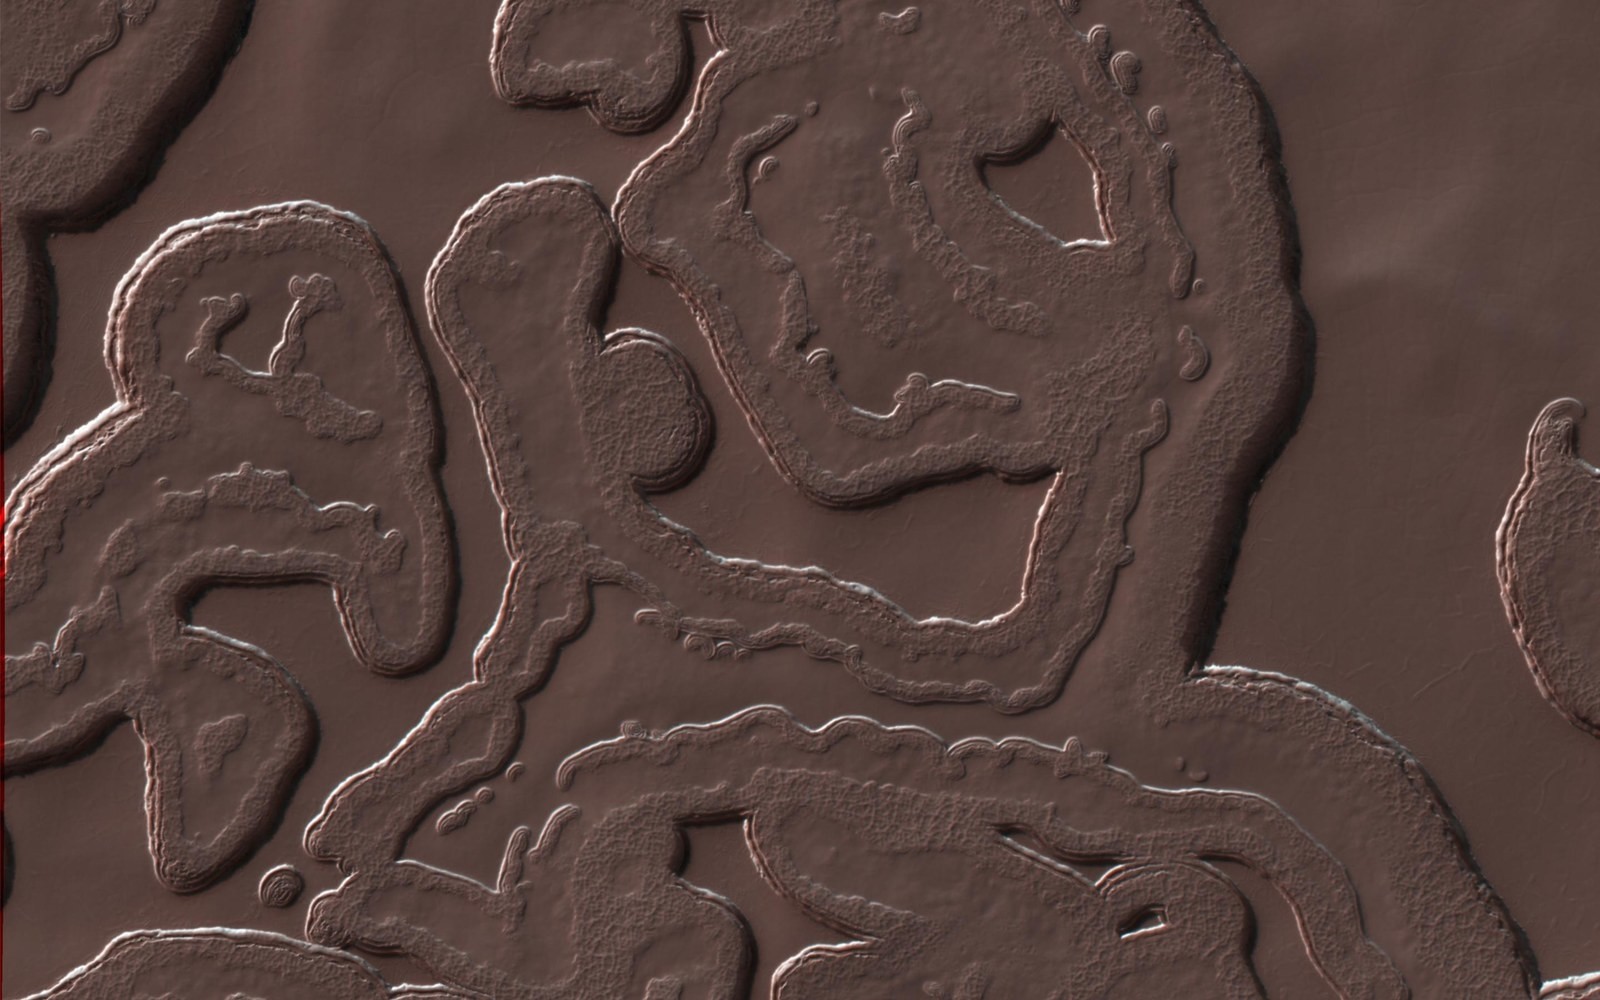 5. Марсианские долины, снятые с помощью автоматической межпланетной станции Mars Reconnaissance Orbiter (NASA) наука, научные исследования, научные открытия, фотографии